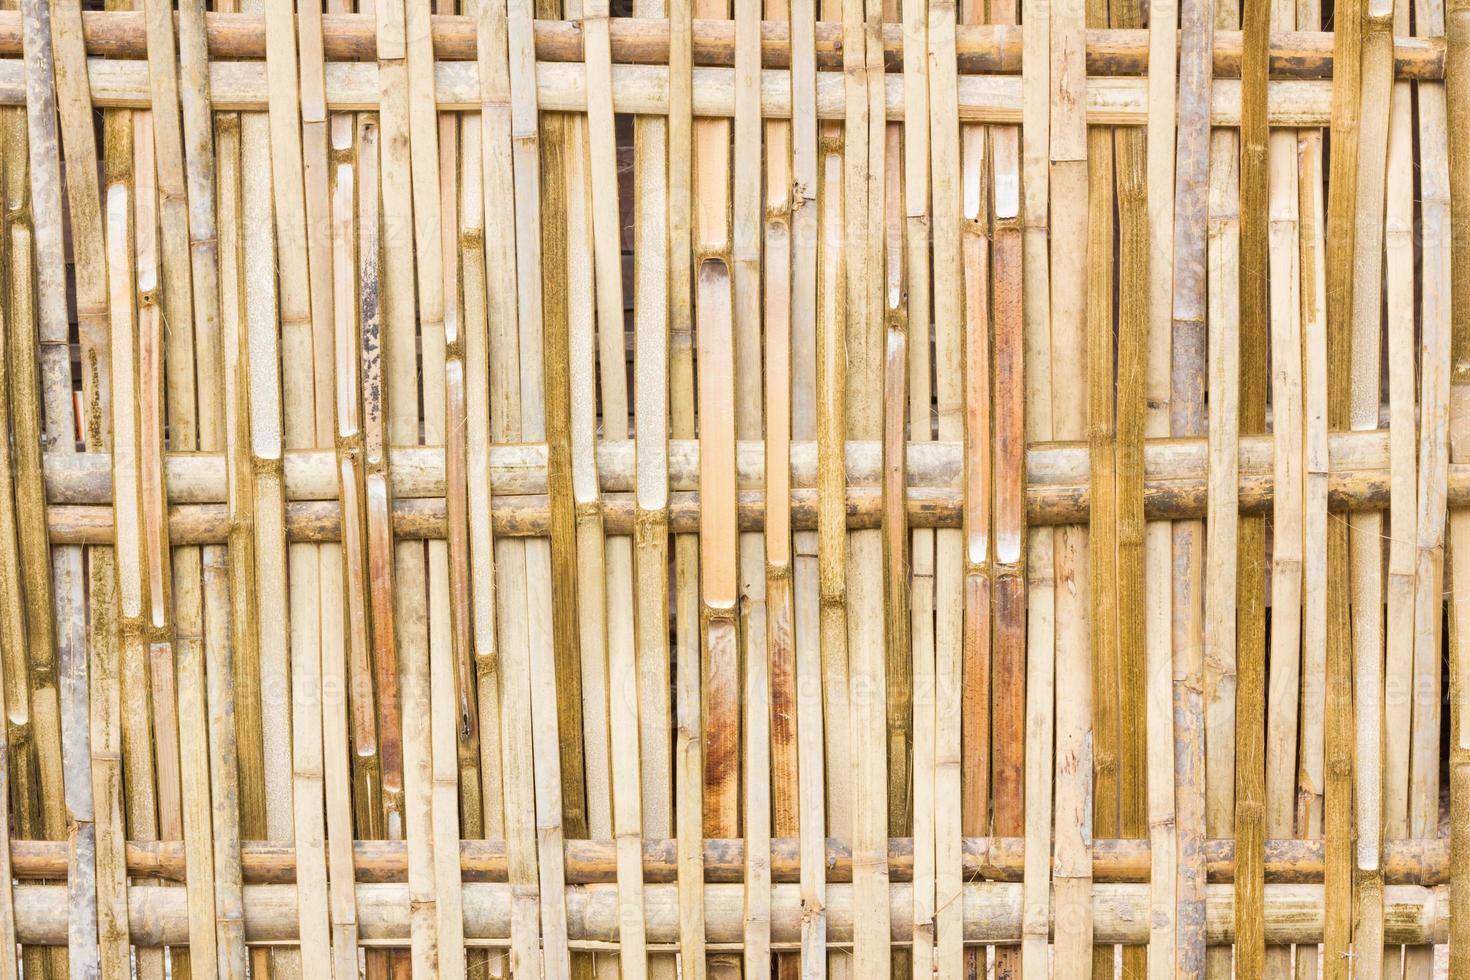 Bamboo fence background horizontal photo